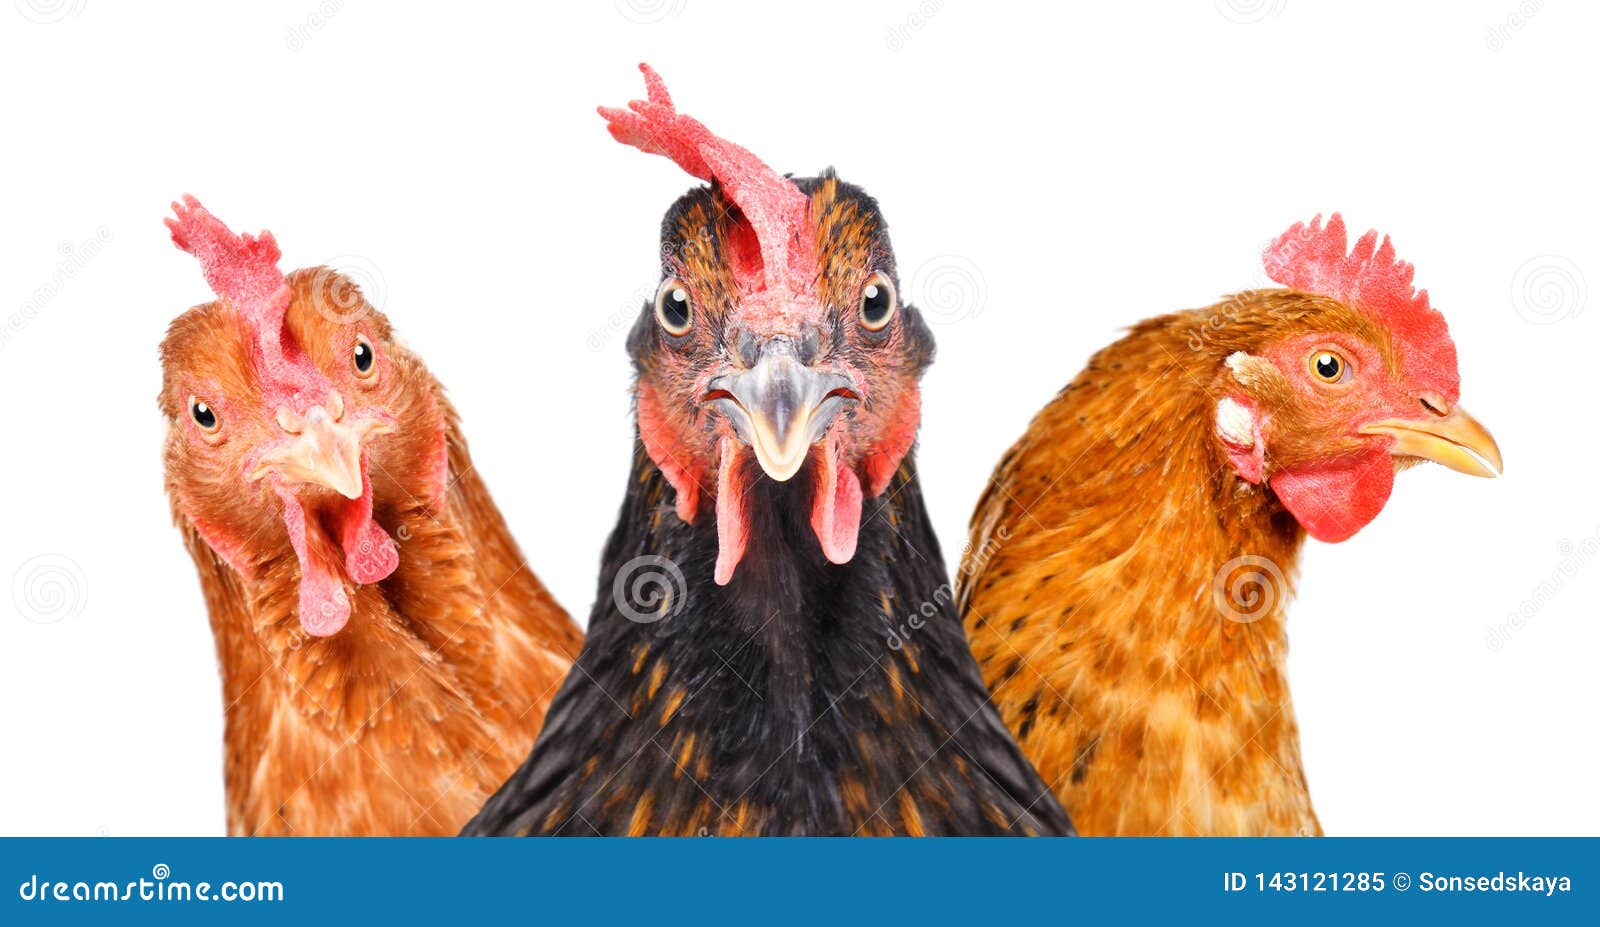 portrait of  three chickens